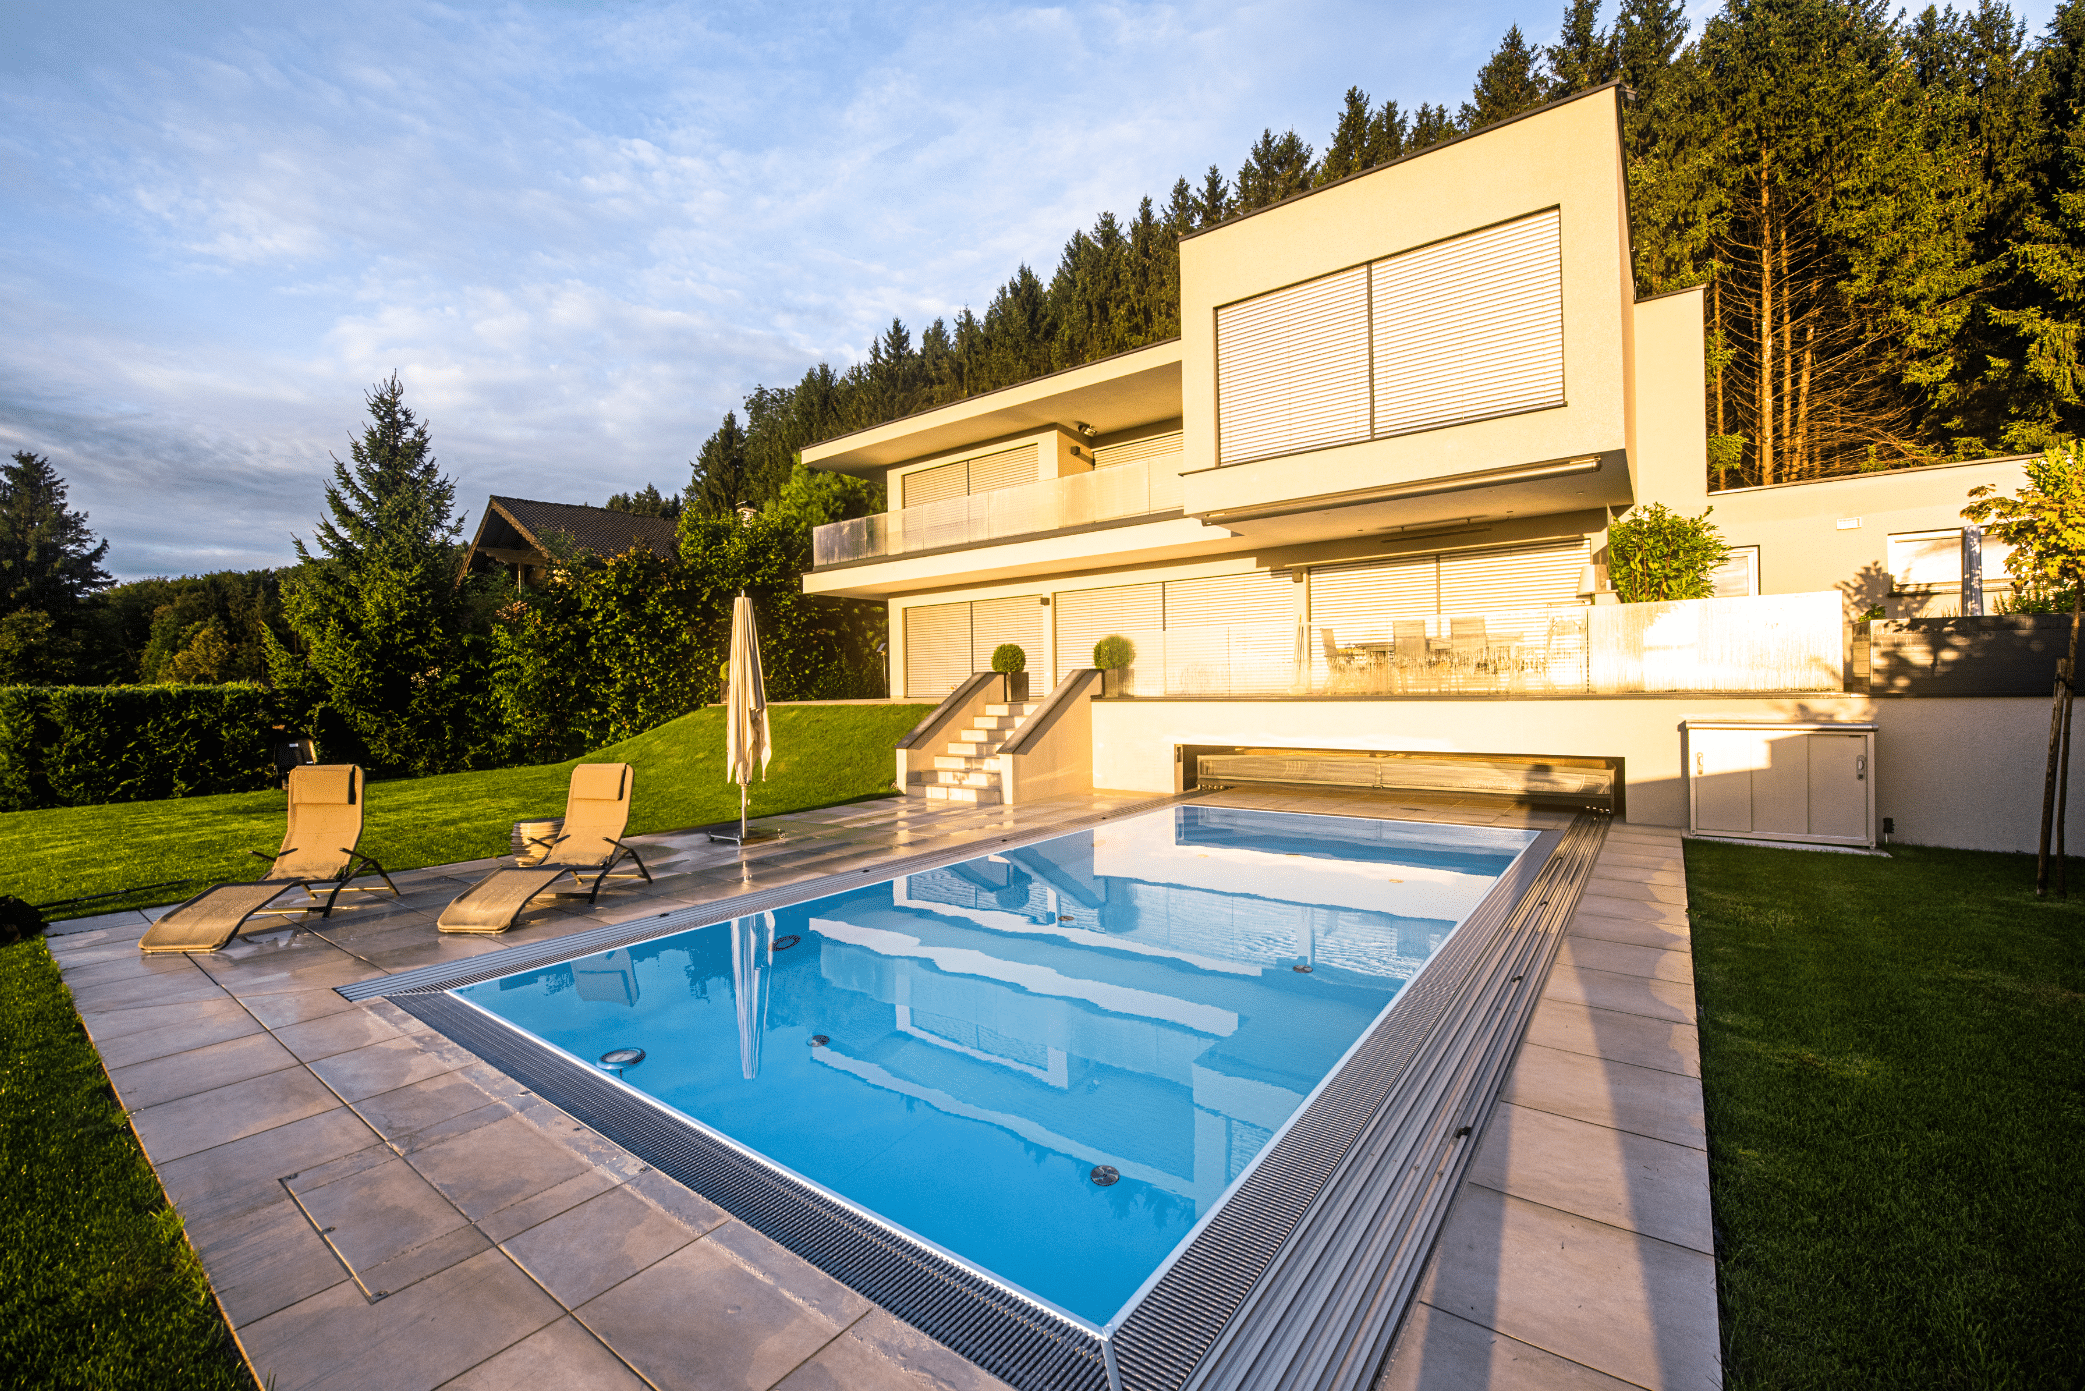 RUHA zeigt einen rechteckigen Pool mit einer Umrandung aus Fliesen und Überdachungsmöglichkeit bei einem Einfamilienhaus mit großem Garten und Sonnenliegen.